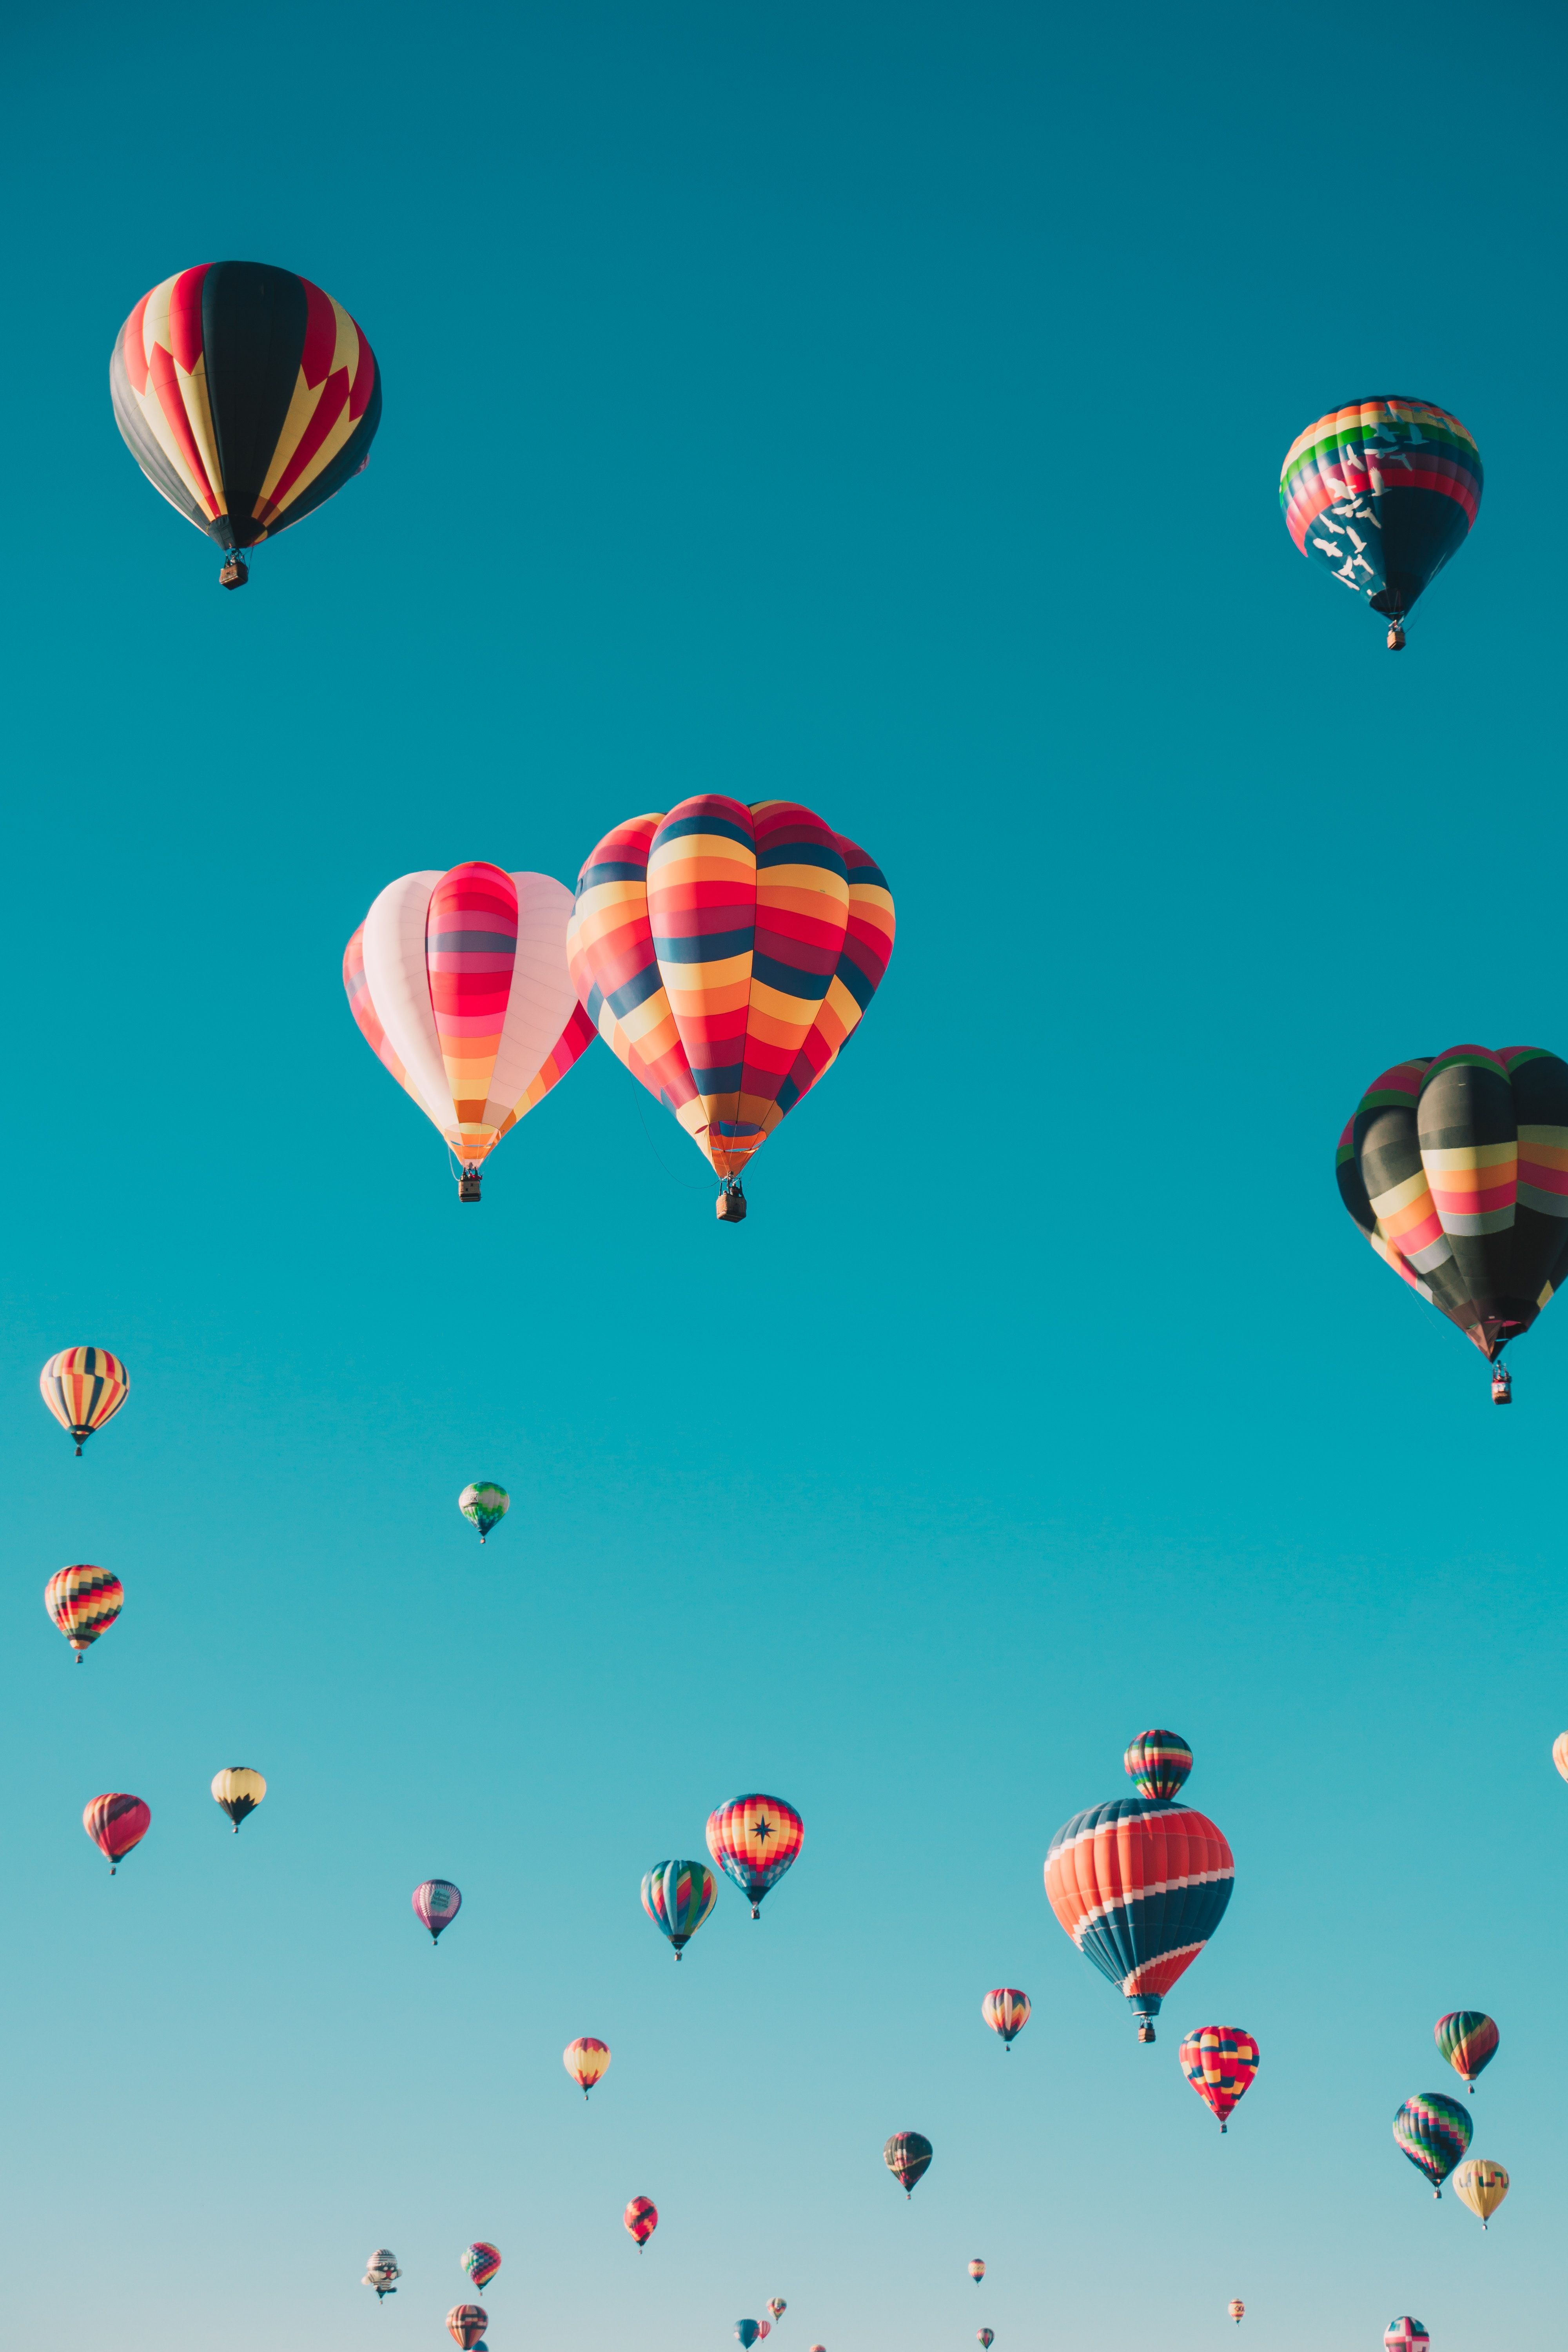  Luftballons Hintergrundbild 4000x6000. Laden Sie Das Luftballons Hintergrundbild Für Ihr Handy In Hochwertigen, Hintergrundbildern Luftballons Kostenlos Herunter